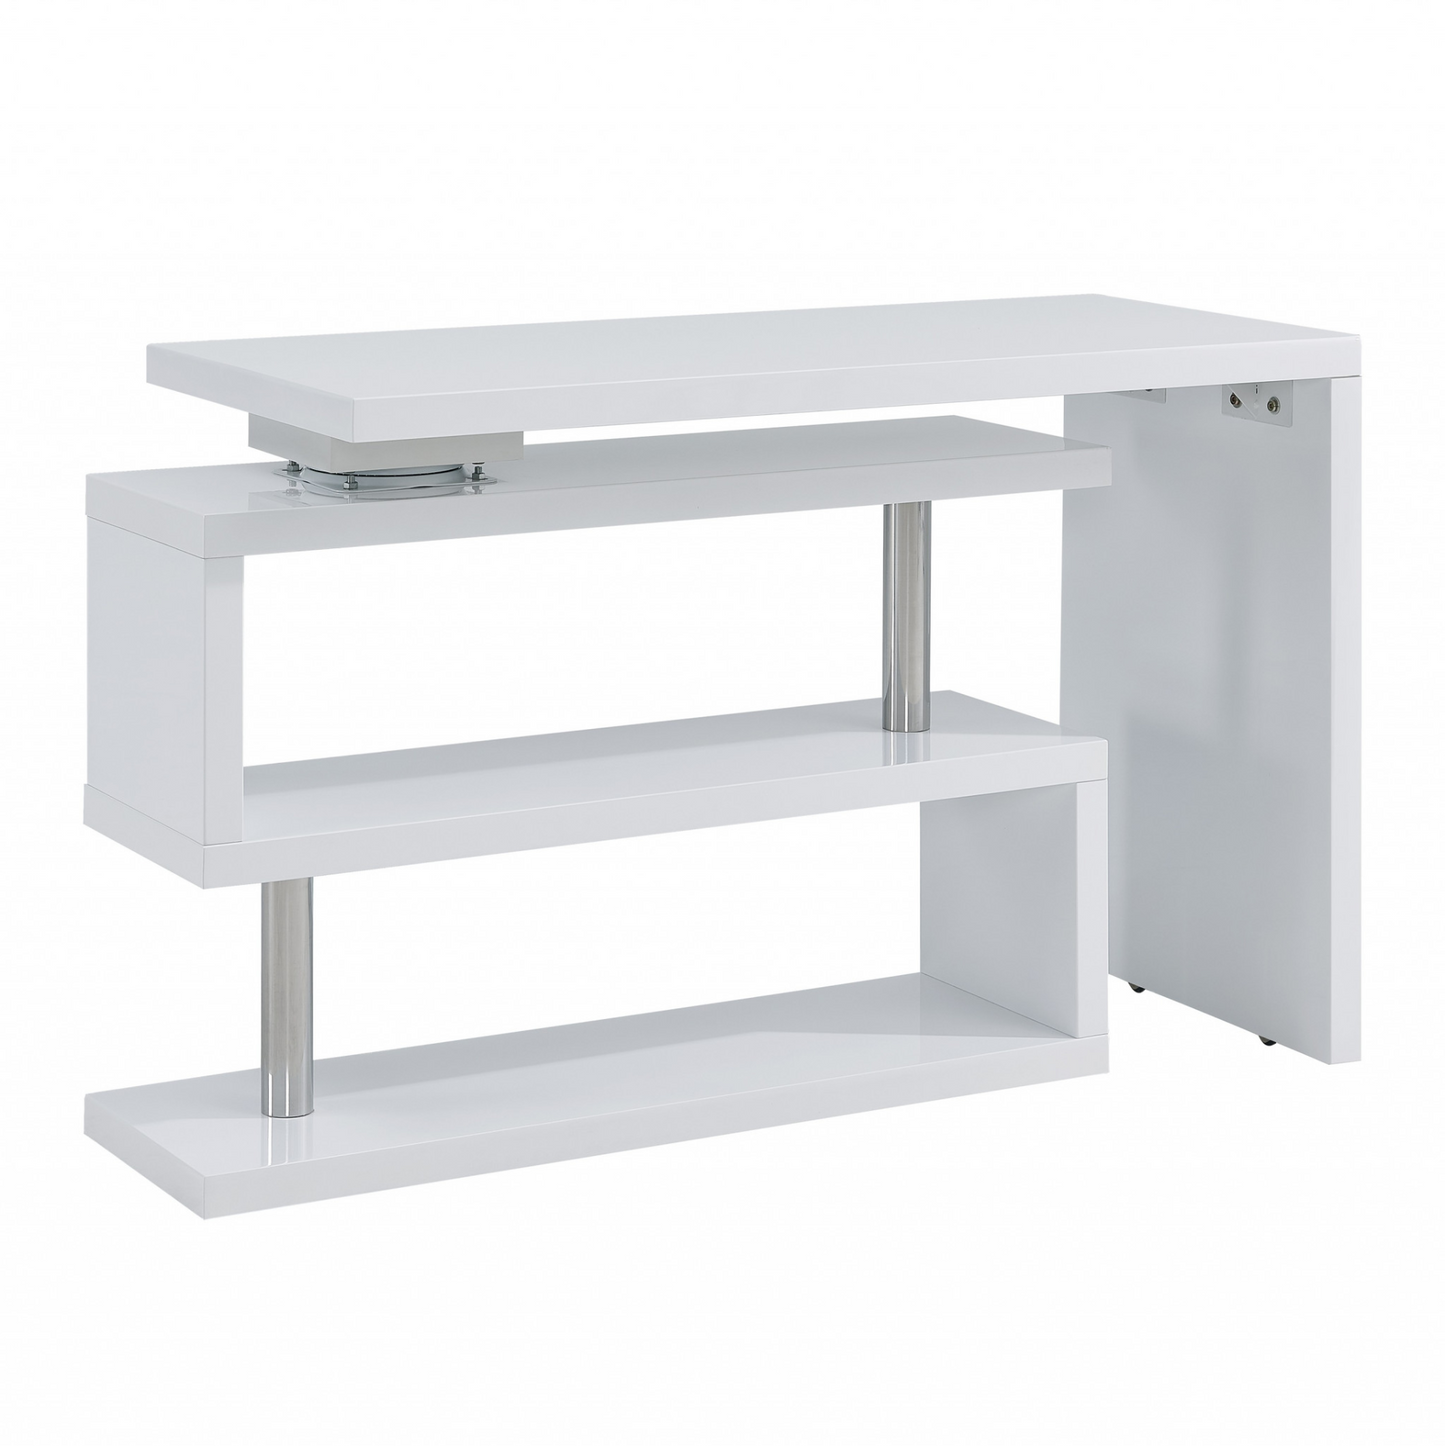 Multifunctional Desk - White